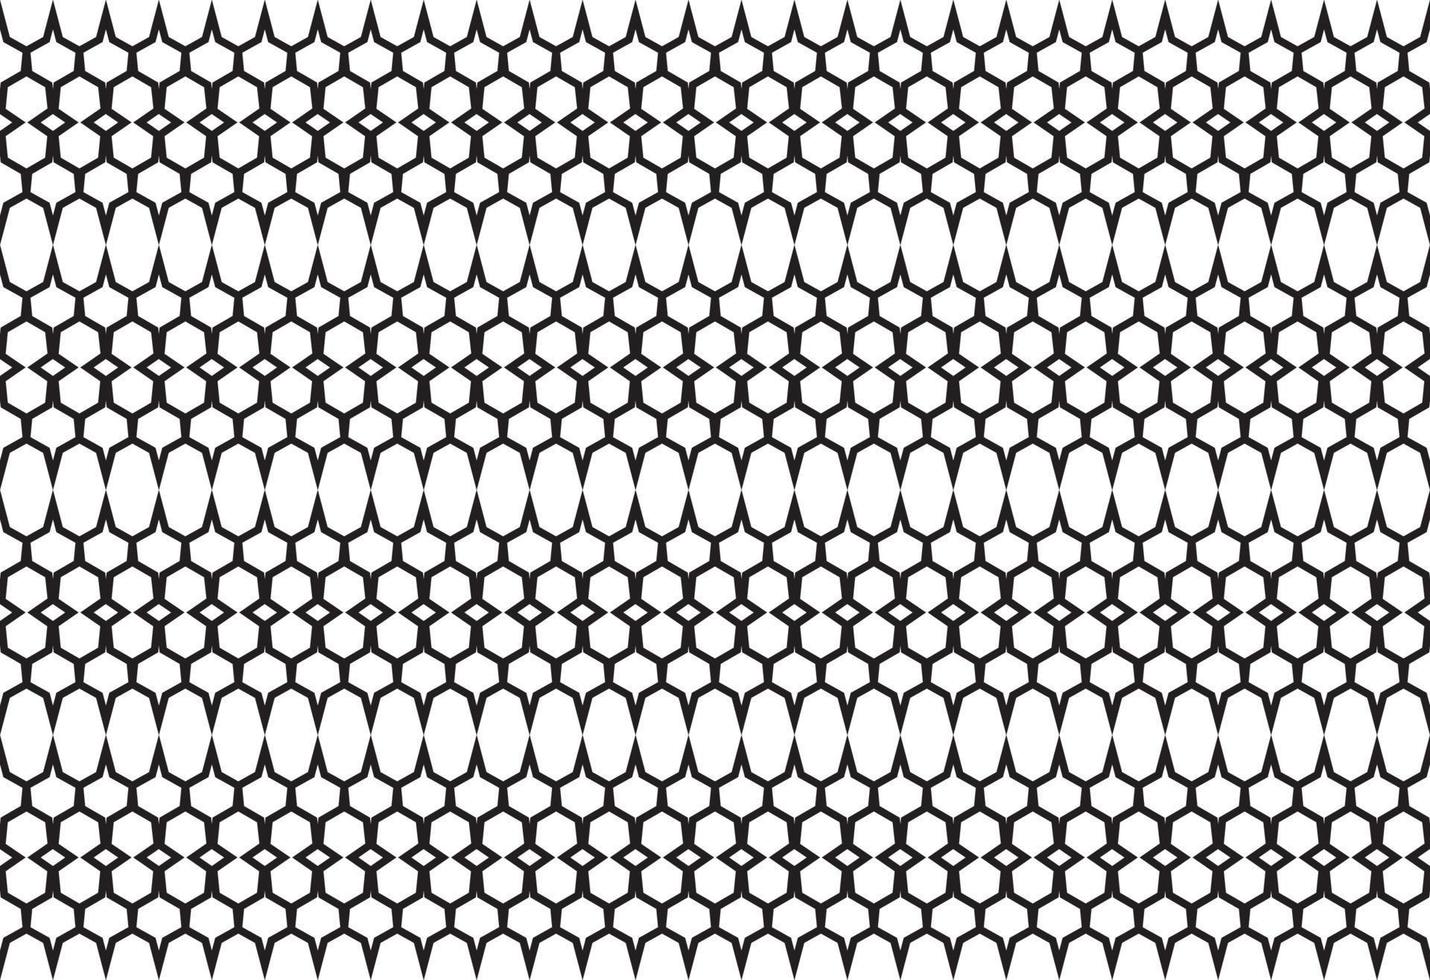 naadloos patroon met zwart-witte kleur, moderne strepenachtergrond, geometrisch ontwerppatroon. vectorillustratie. vector